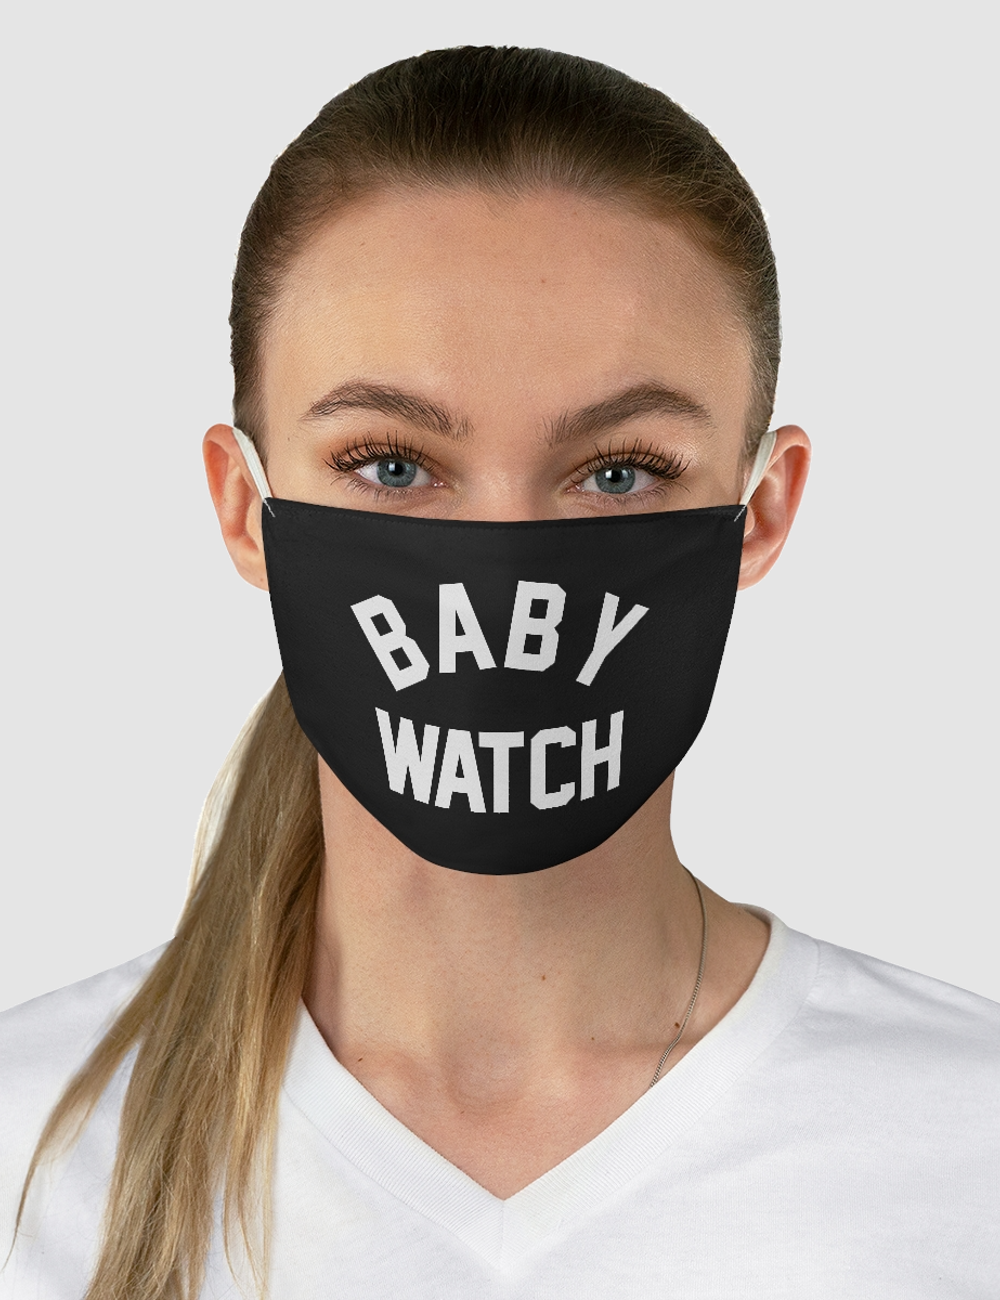 Baby Watch | Fabric Face Mask OniTakai